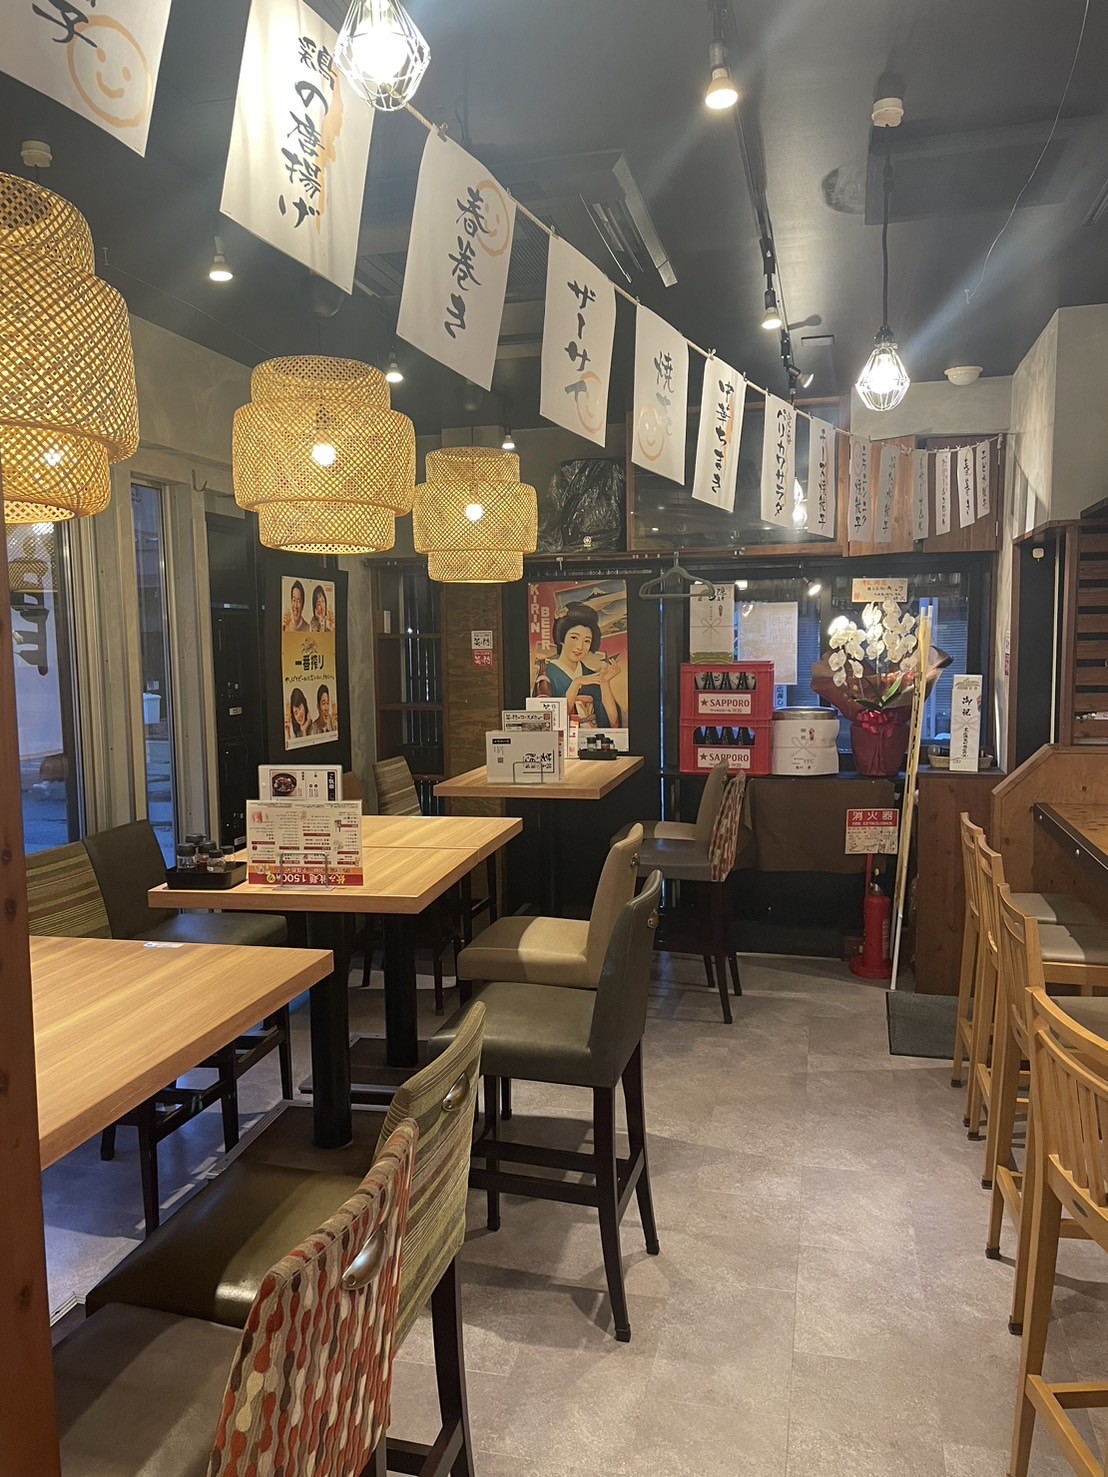 鳥取県鳥取市にオープンした居酒屋『餃子酒場笑う門』の店内の様子